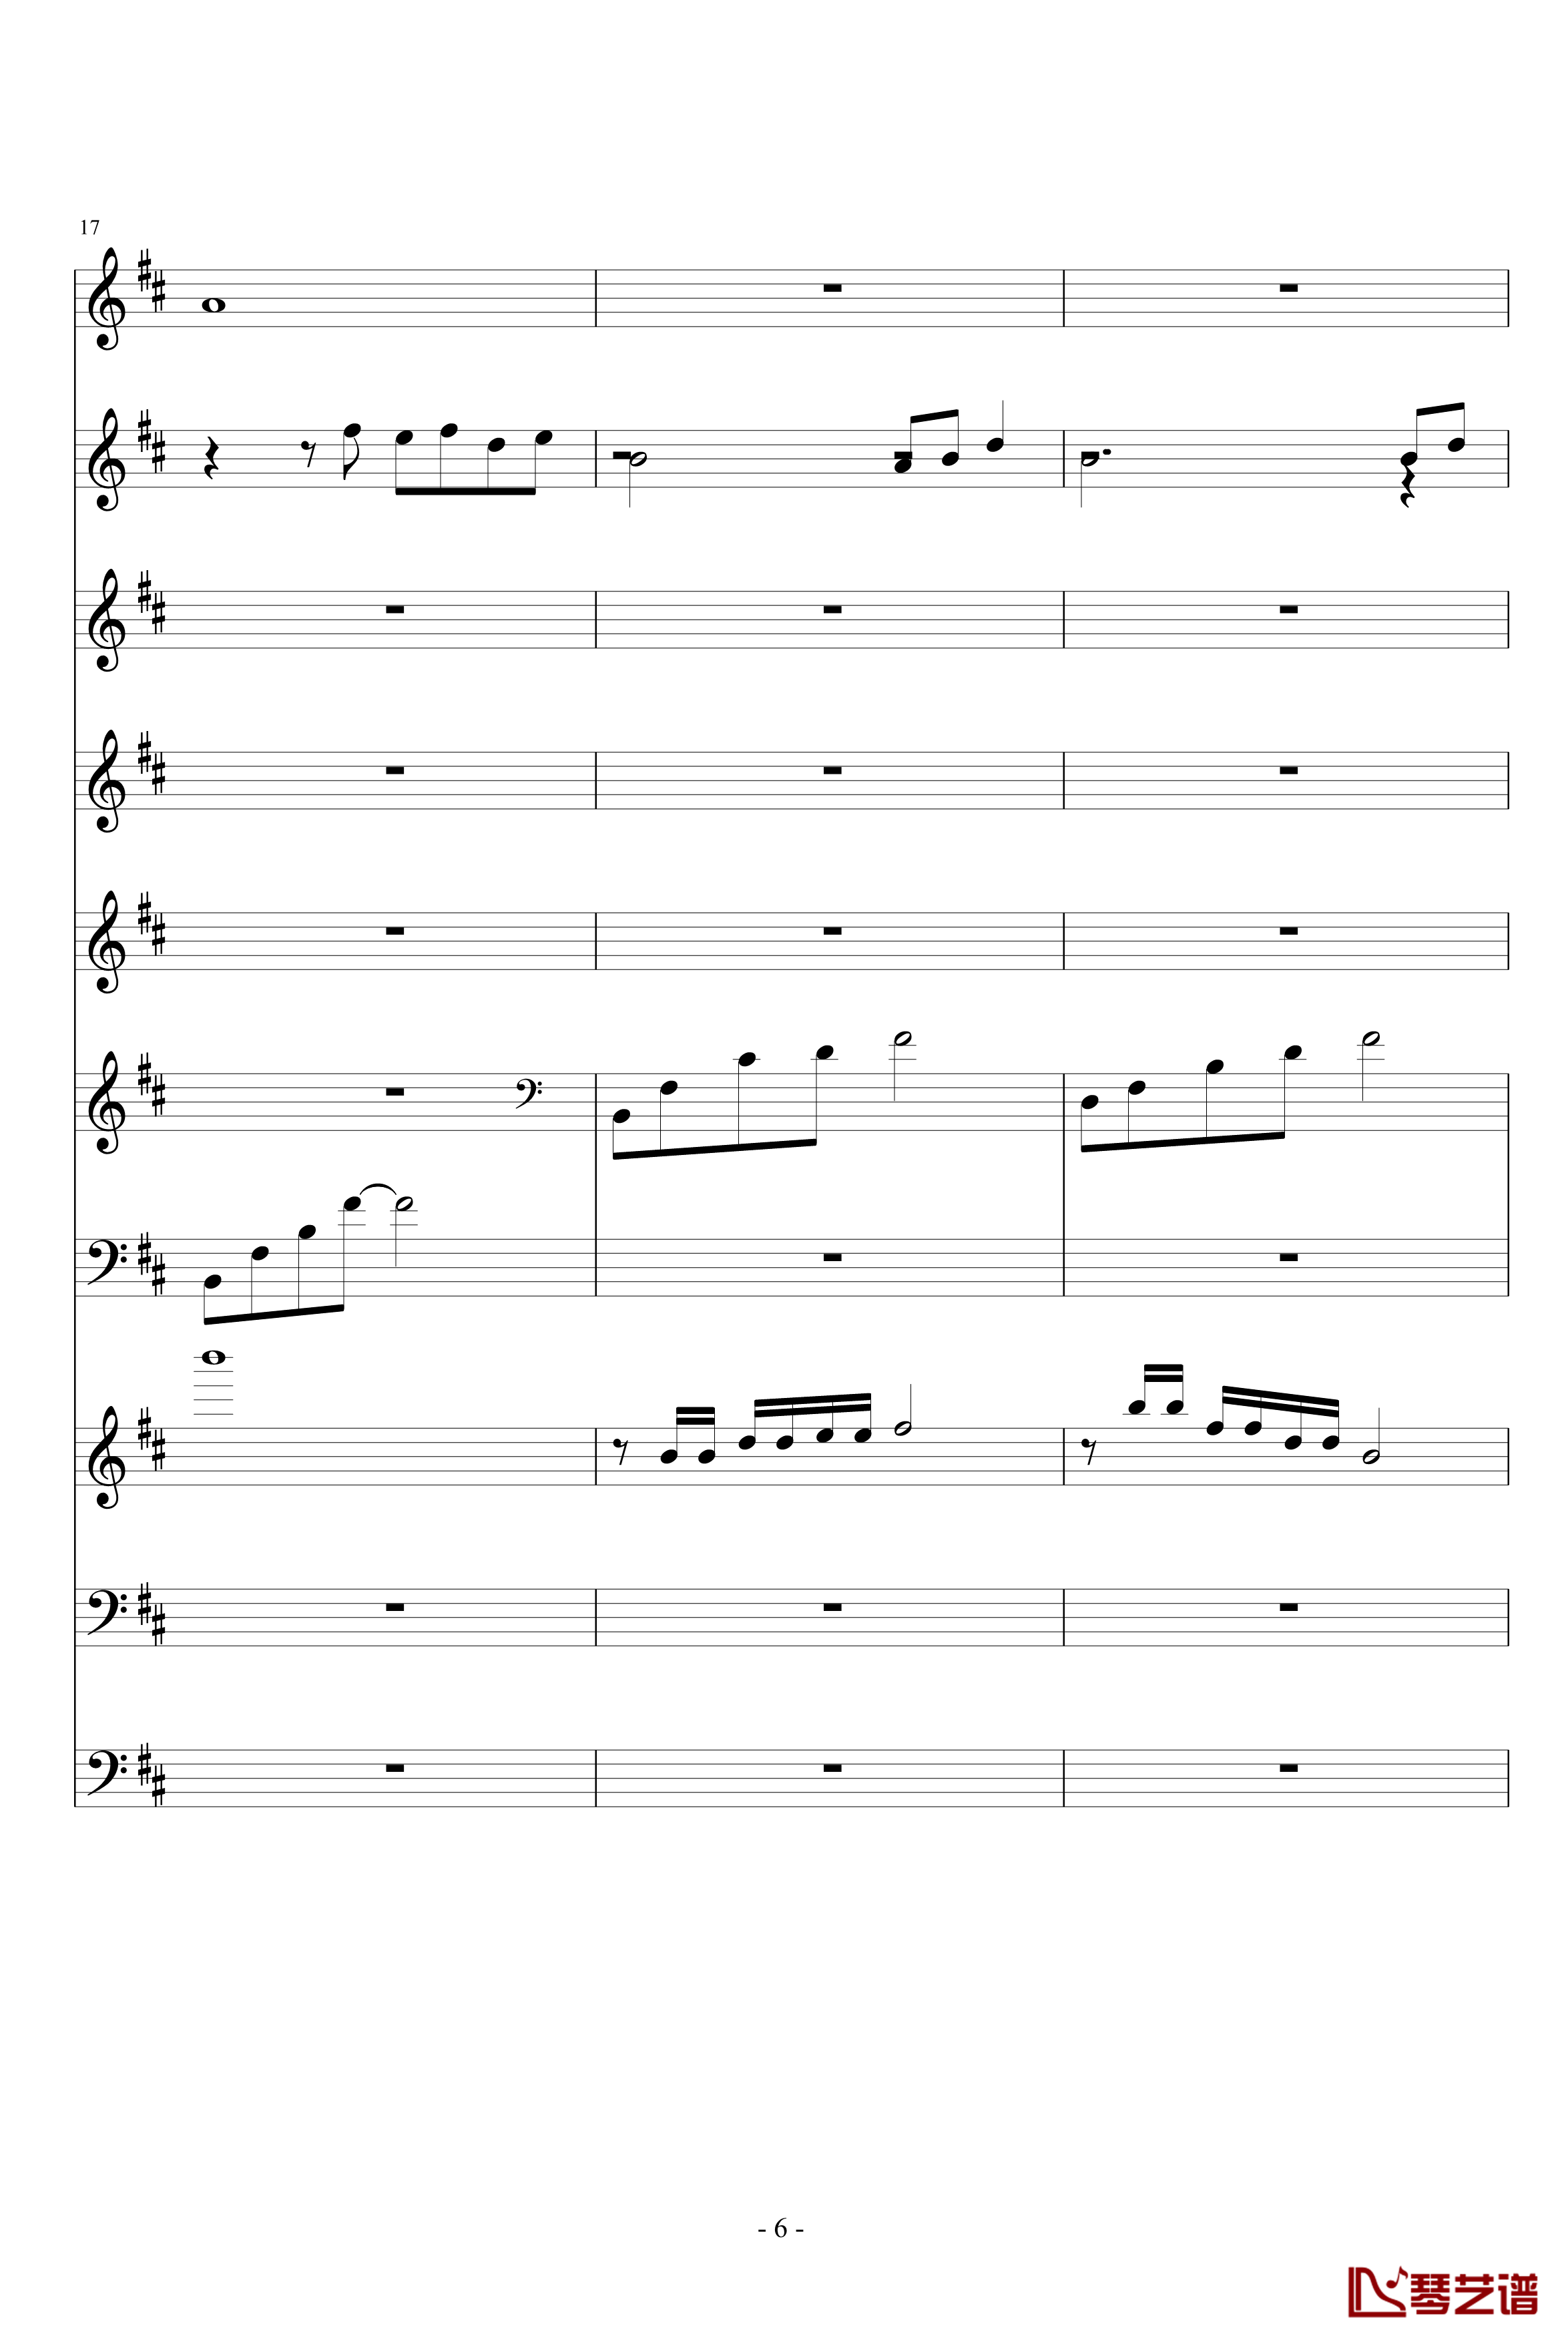 月落暗香坡钢琴谱-巴乌、笛子、琵琶、二胡、古筝-peterkingily6